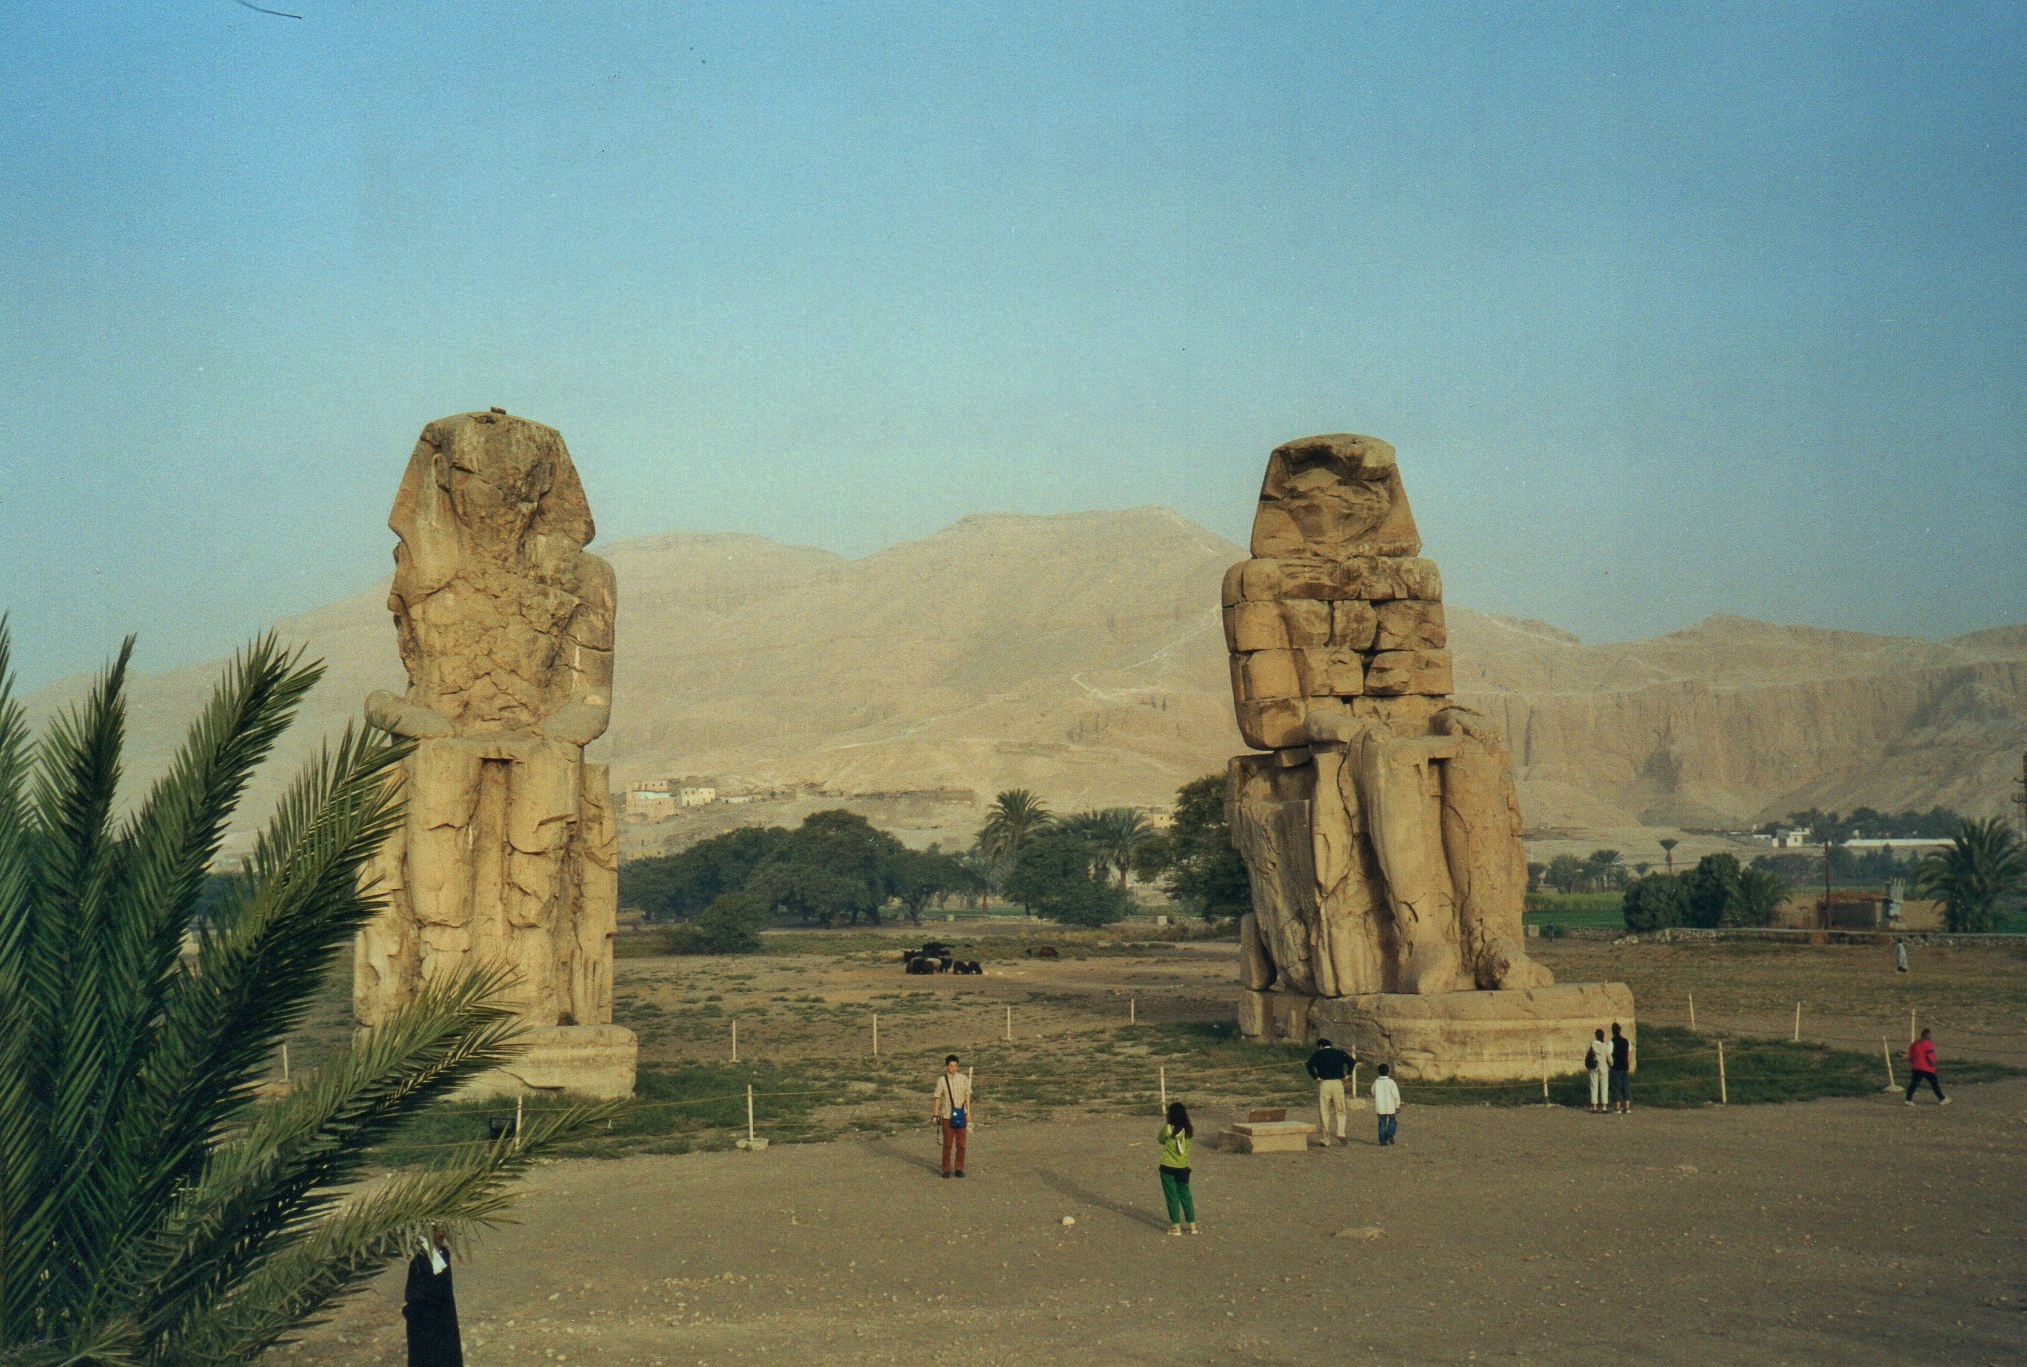 Colossi di Memnon - the colossi of Memnon